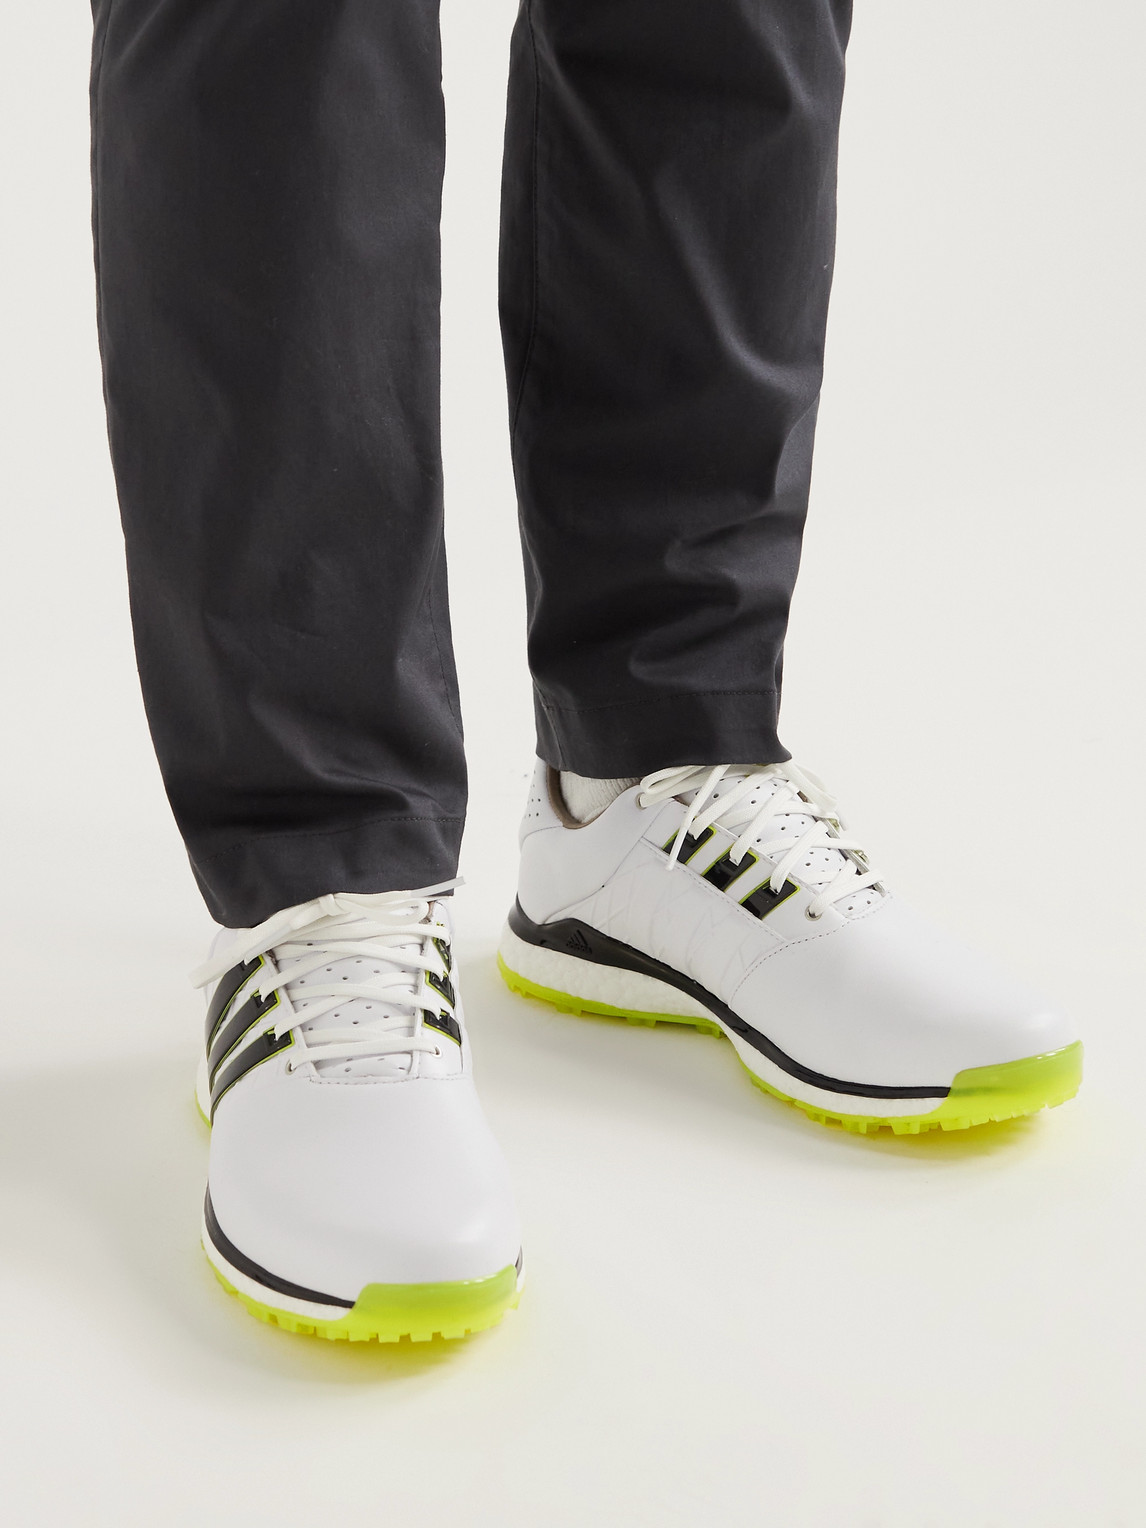 Adidas Golf Tour360 Xt-sl 2.0 Rubber-trimmed Leather Spikeless Golf ...